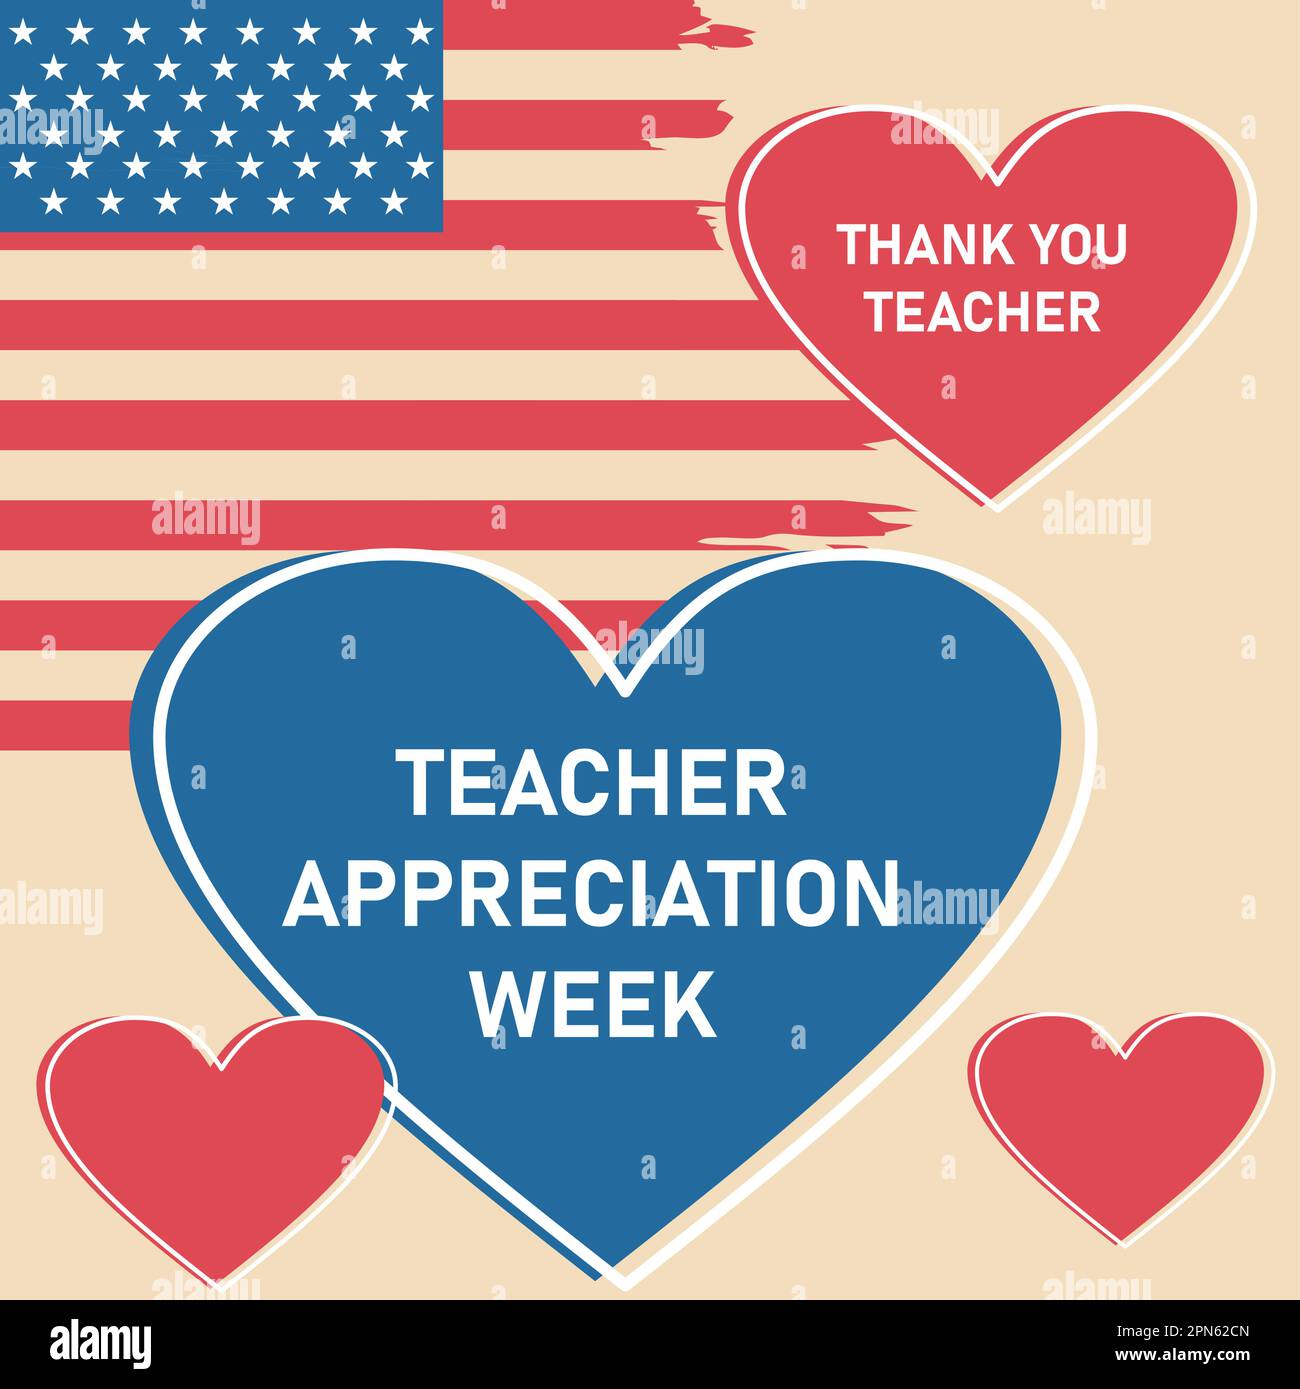 Lehrerwoche in den Vereinigten Staaten, zu Ehren von Lehrern, die hart arbeiten und unsere Kinder unterrichten. Schule und Bildung. Lernkonzept für Schüler Stock Vektor